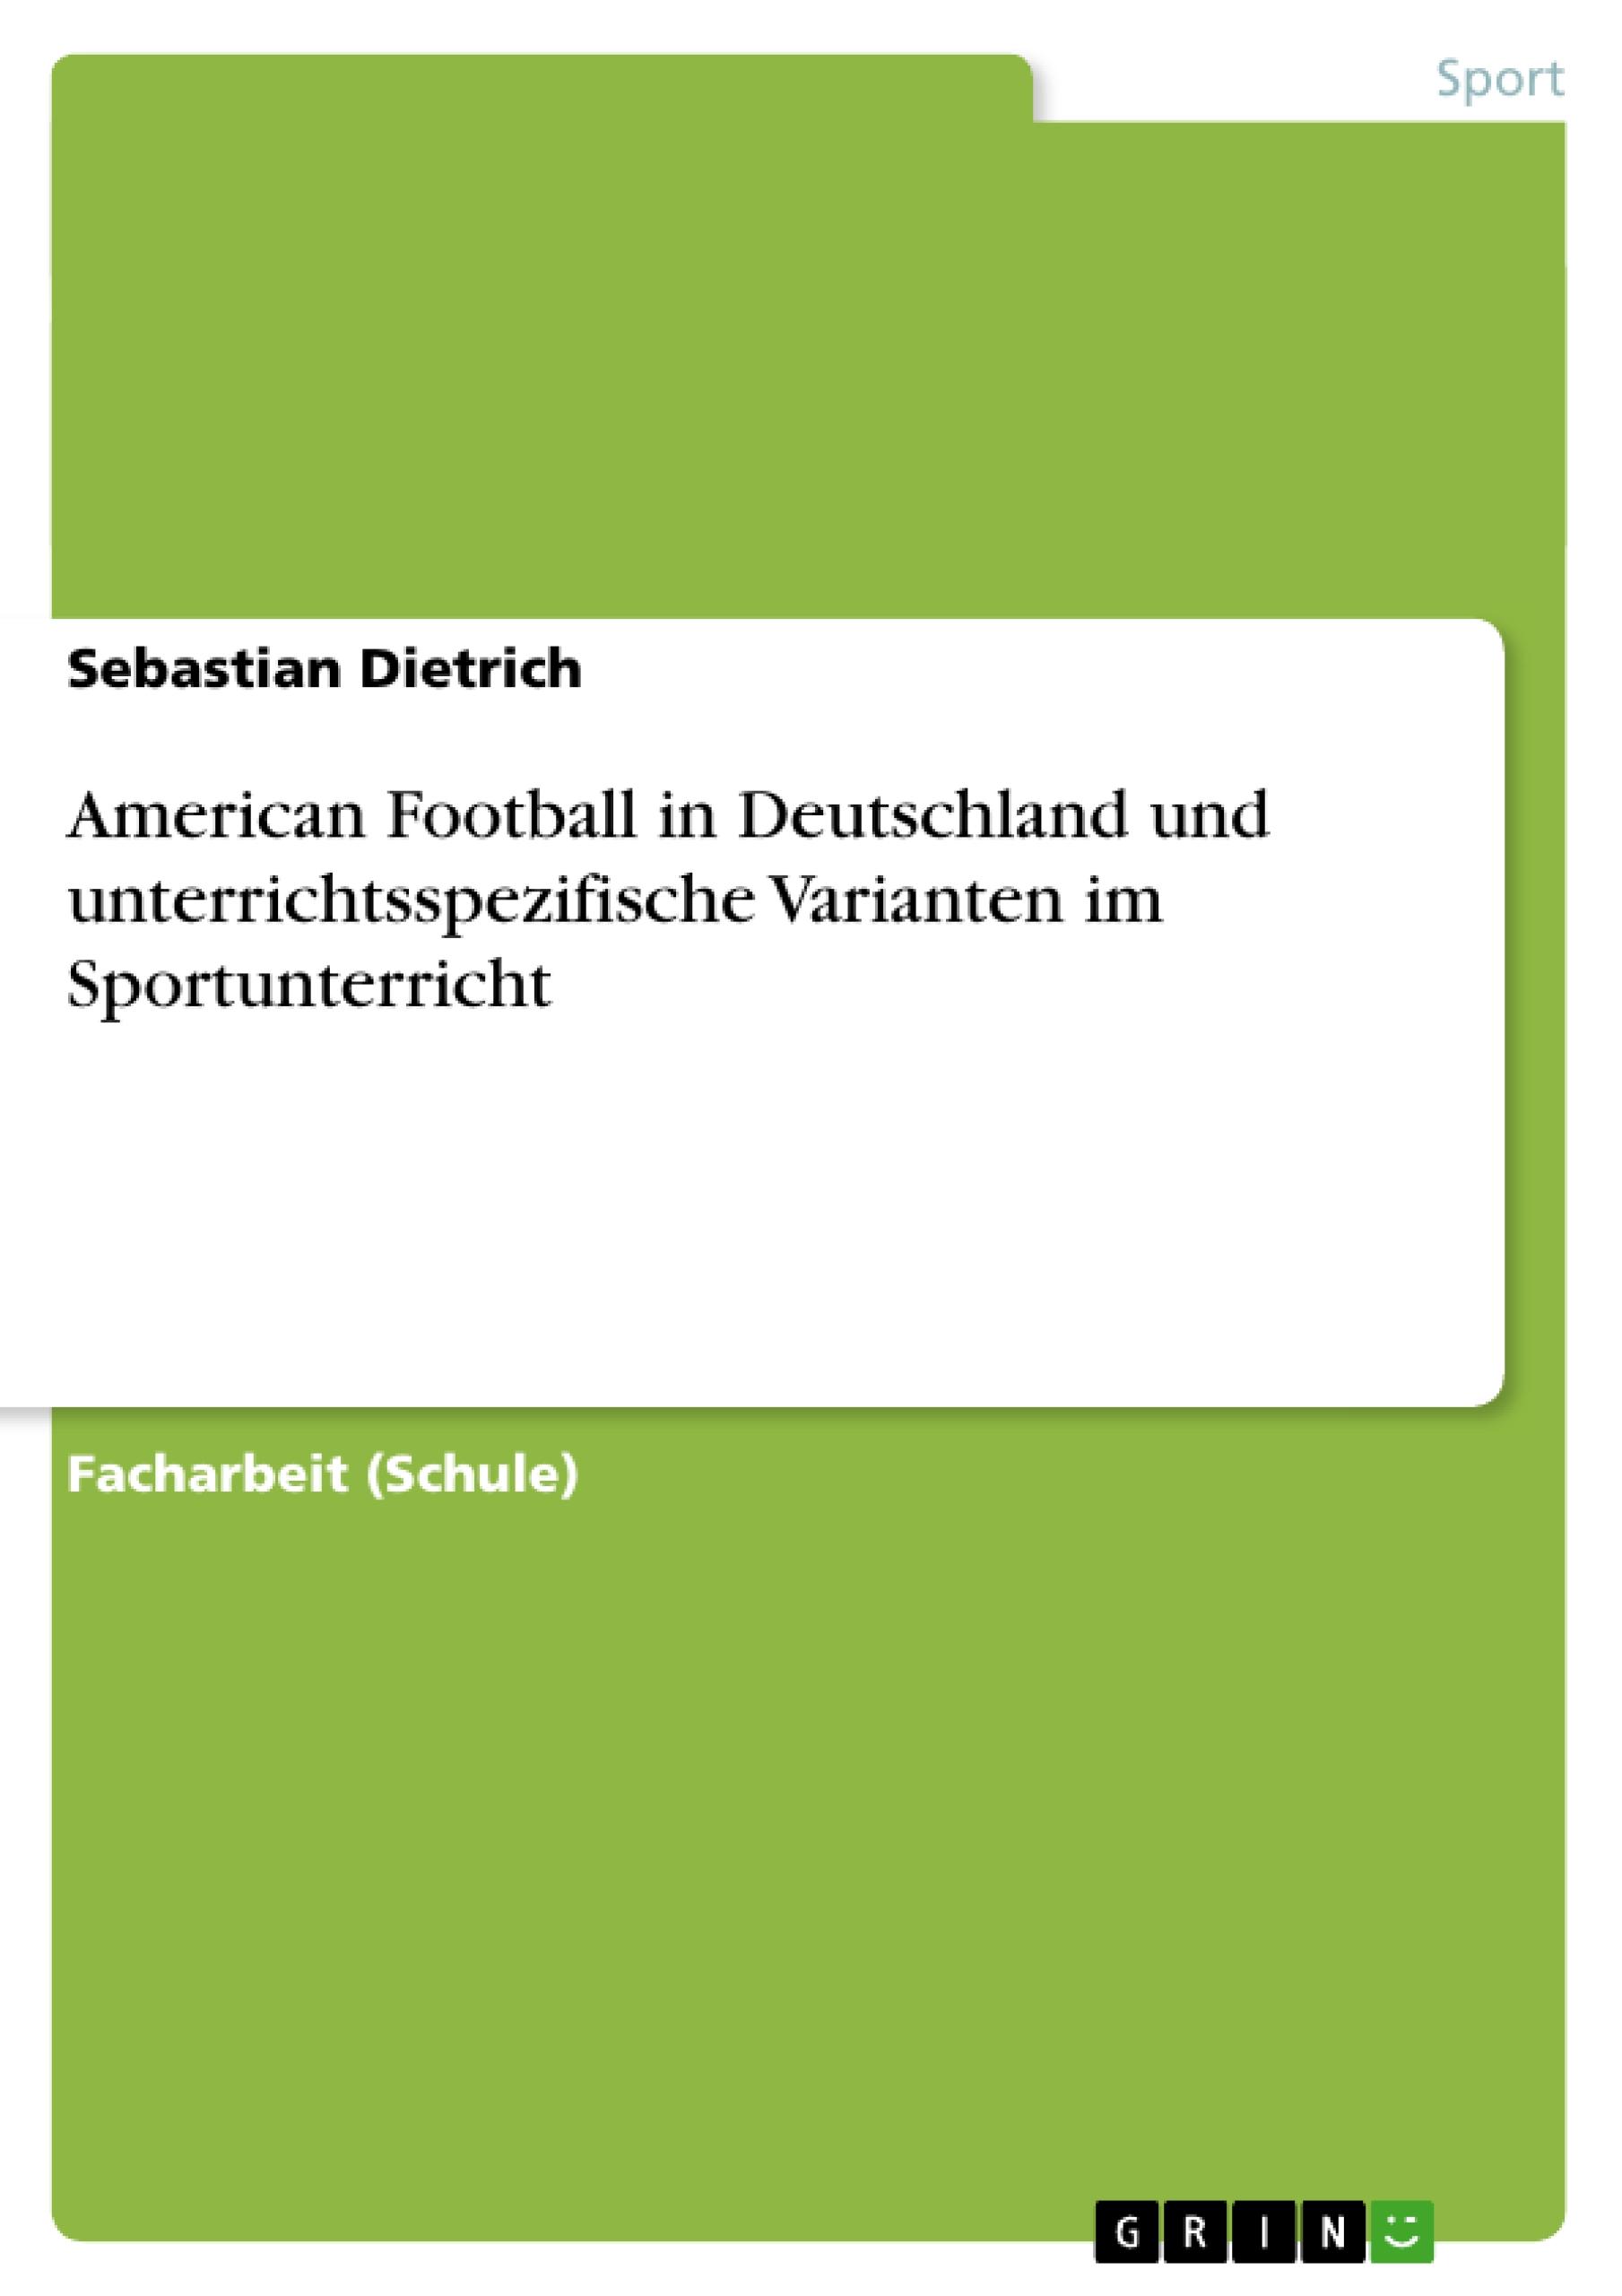 American Football in Deutschland und unterrichtsspezifische Varianten im Sportunterricht - Dietrich, Sebastian